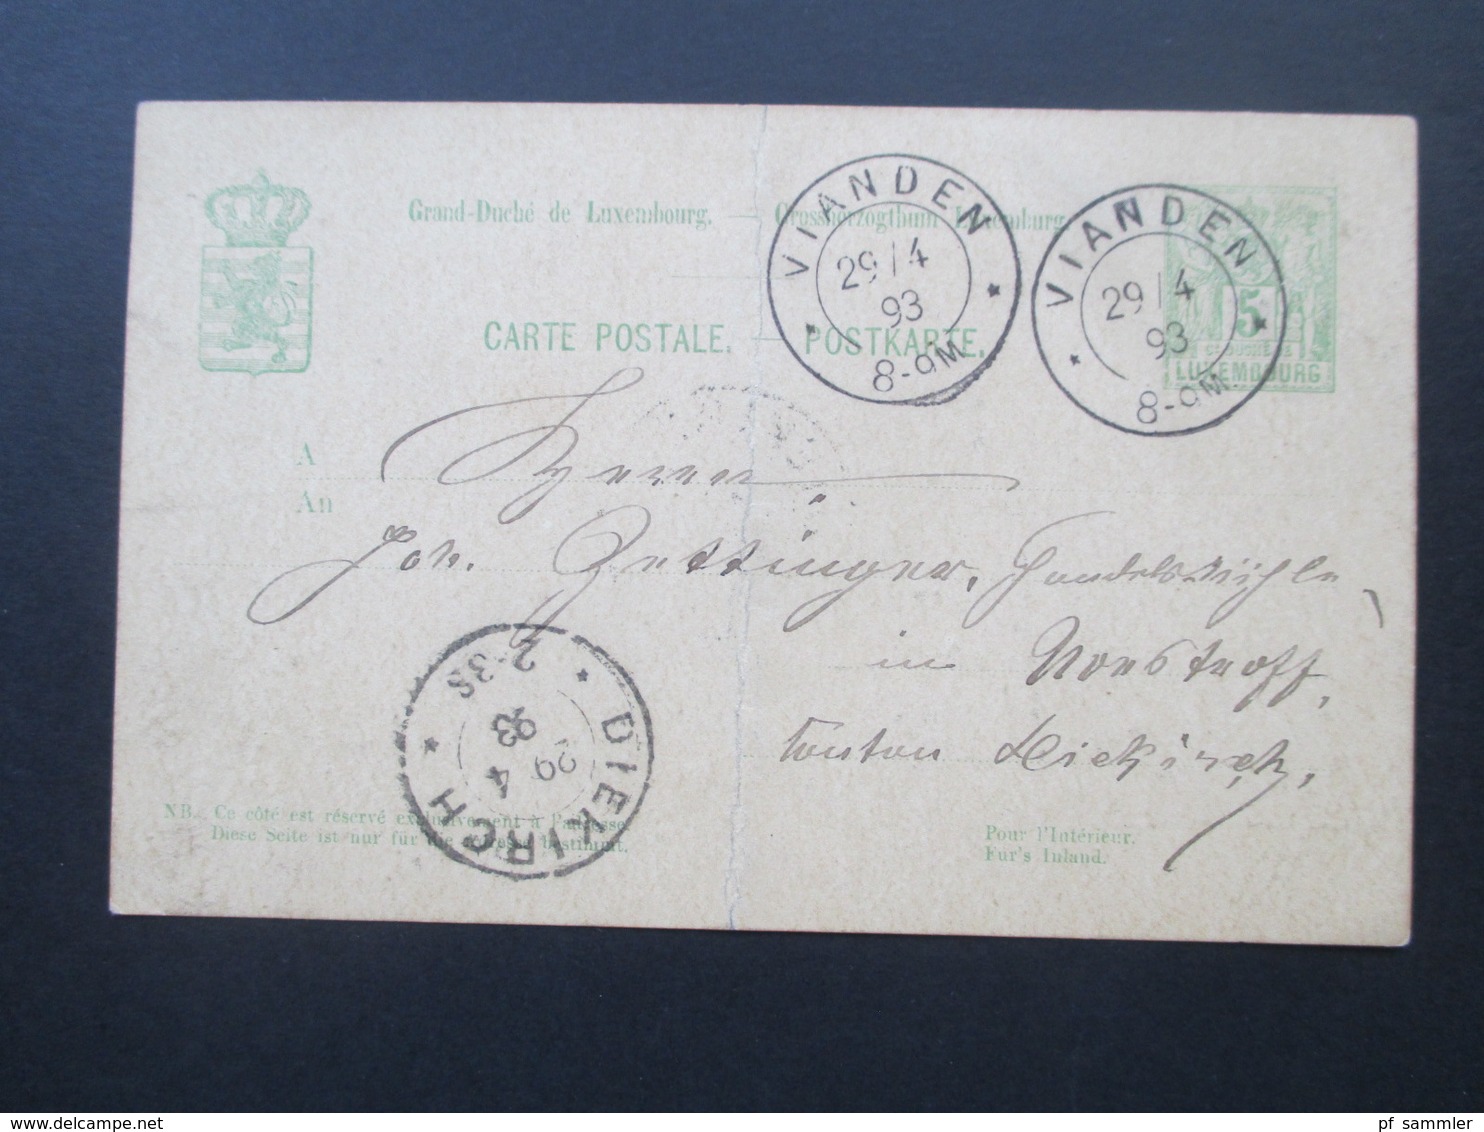 Luxemburg 1893 Ganzsache Vianden Nach Diekirch Gesendet! - Entiers Postaux